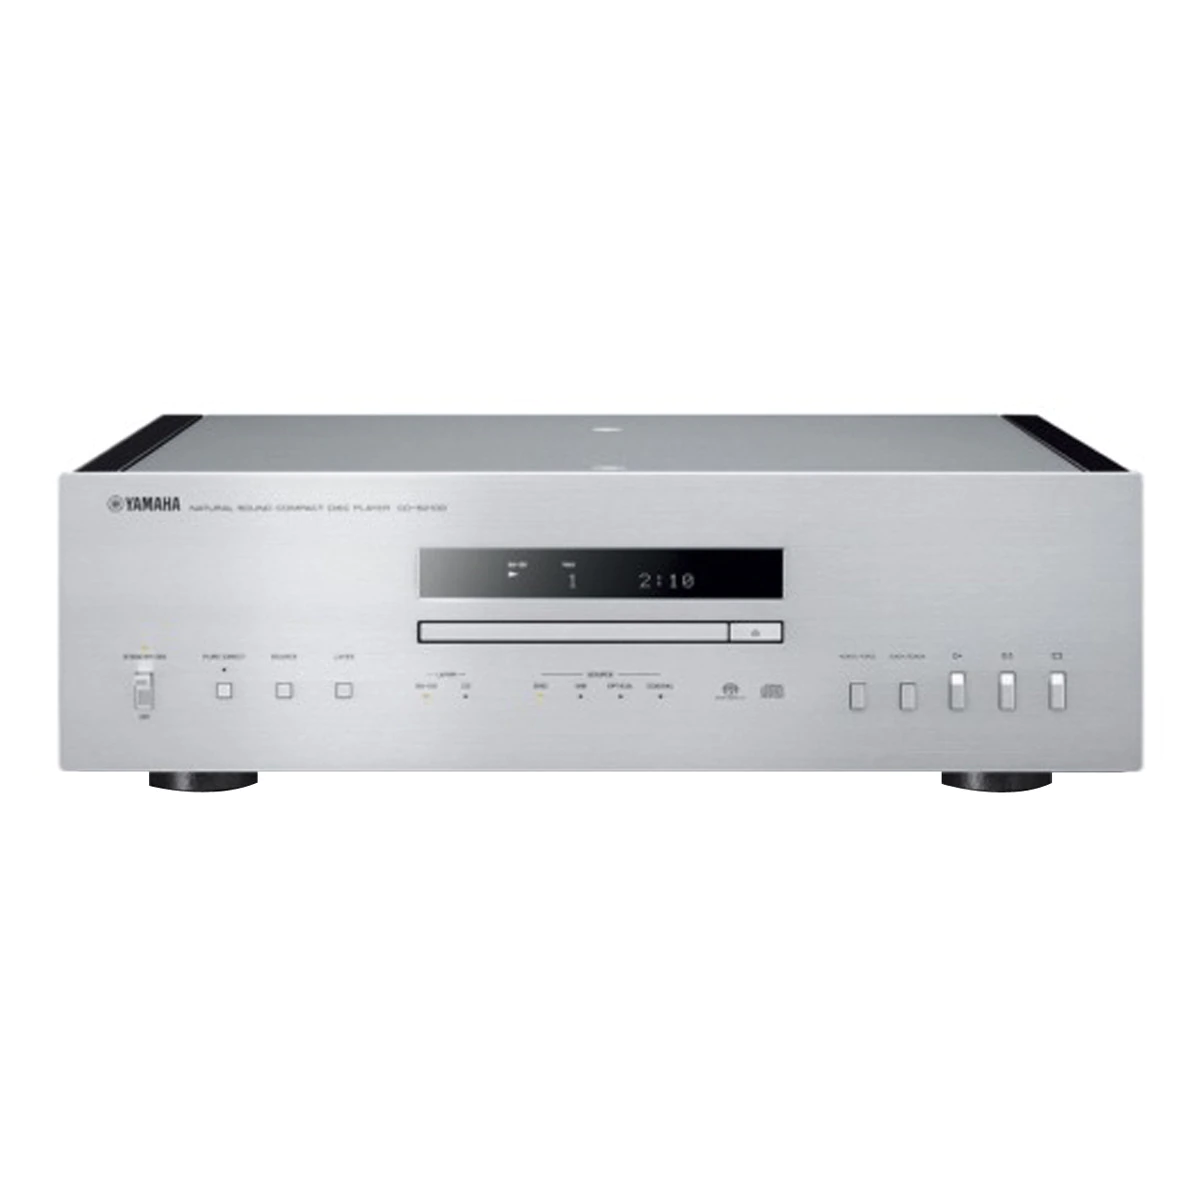 Reproductor SACD / CD Yamaha CD-S2100